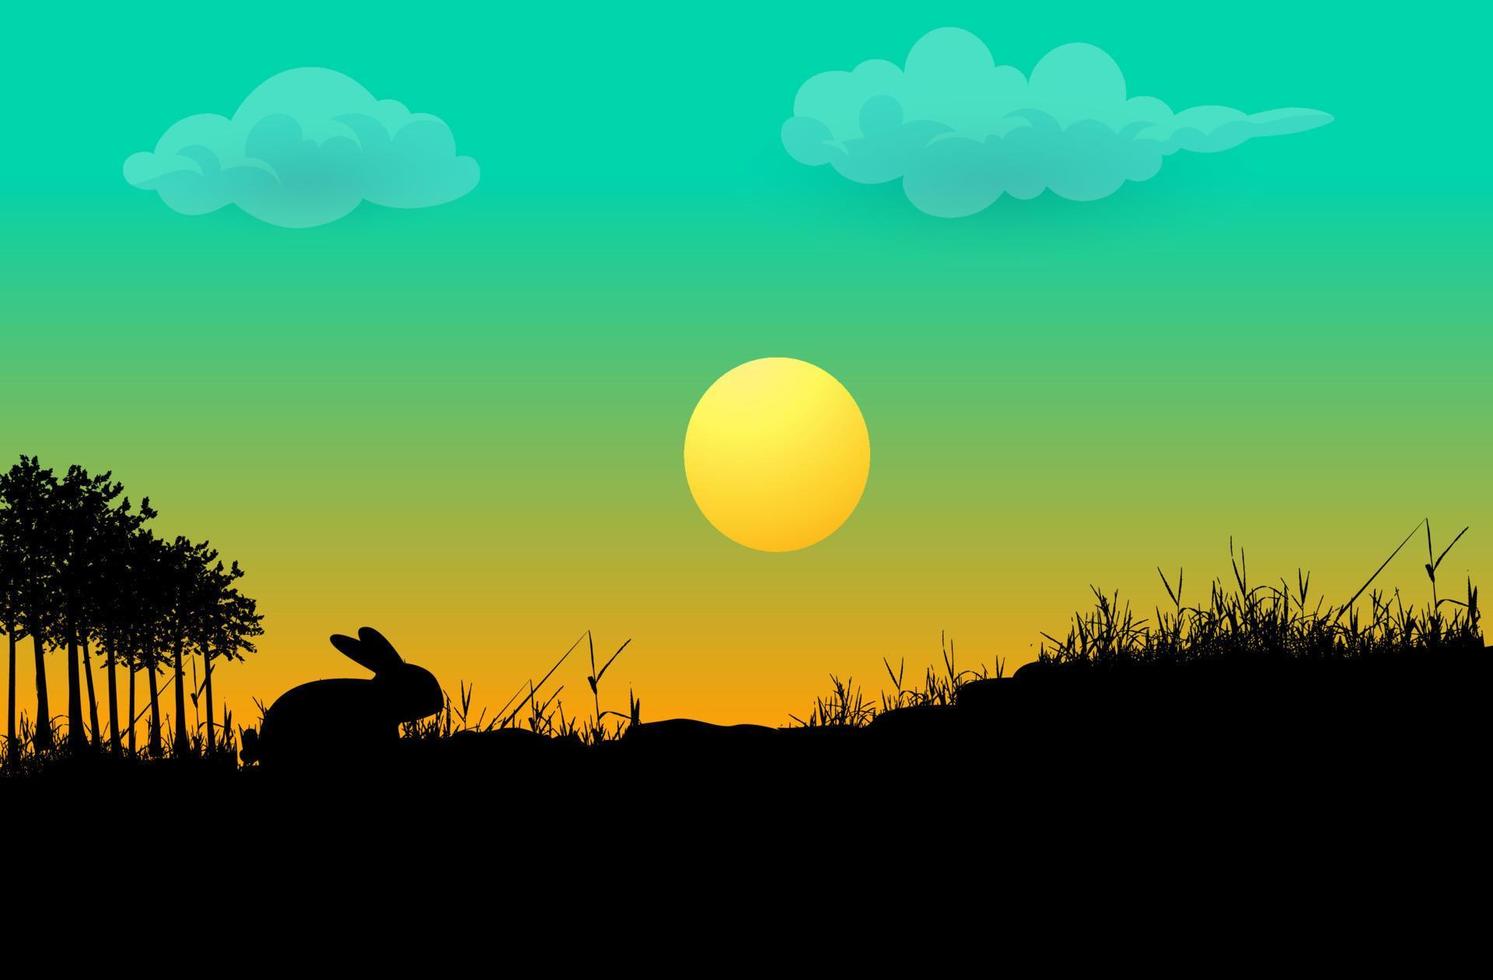 gelukkige pasen silhouetten vlakke stijl kaart met konijn op gras vector